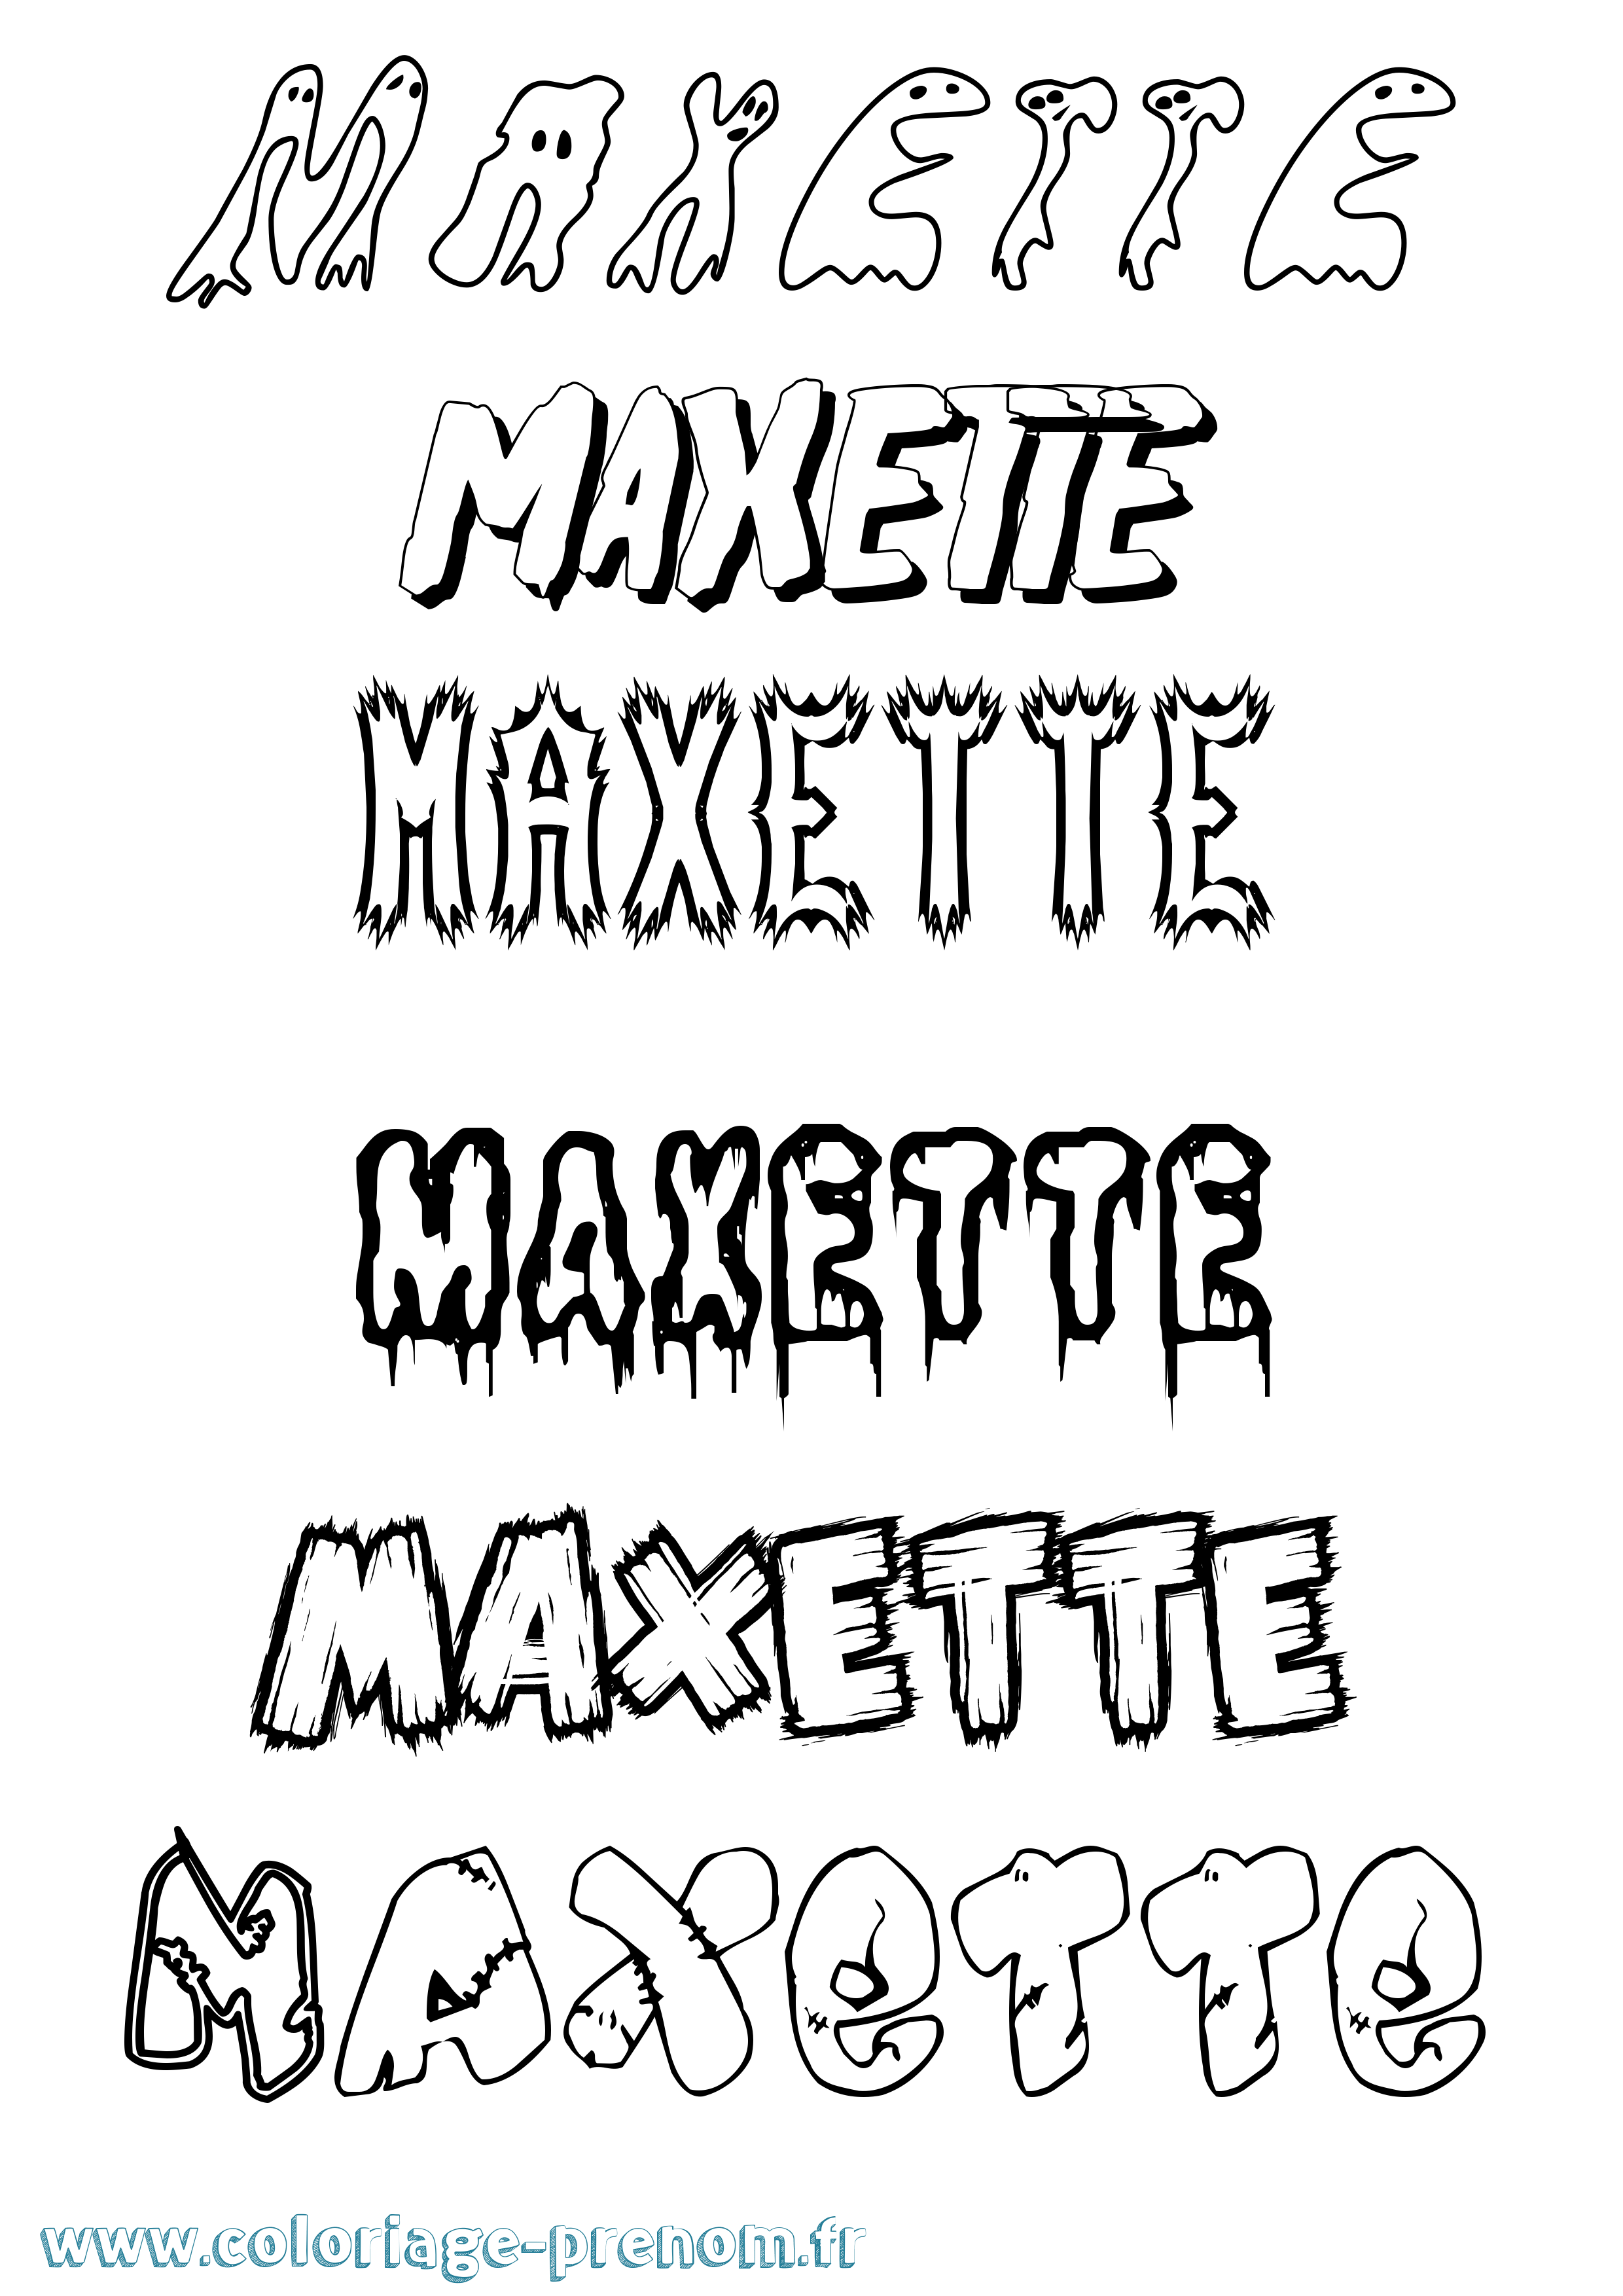 Coloriage prénom Maxette Frisson